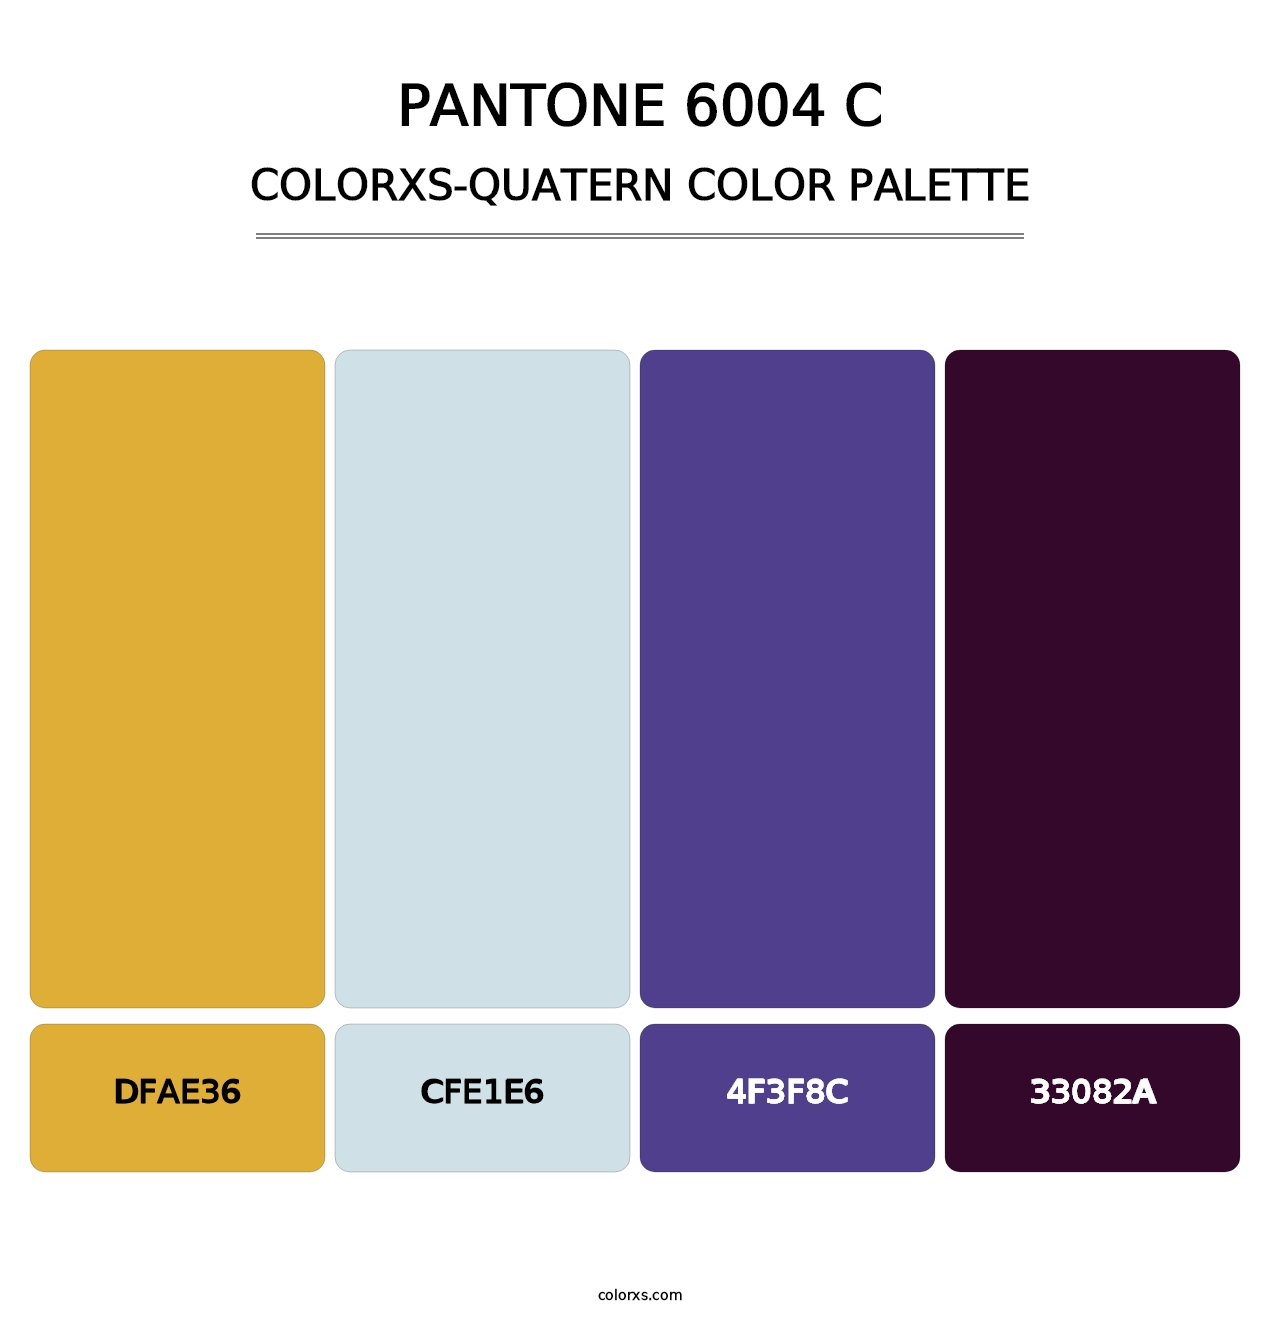 PANTONE 6004 C - Colorxs Quatern Palette